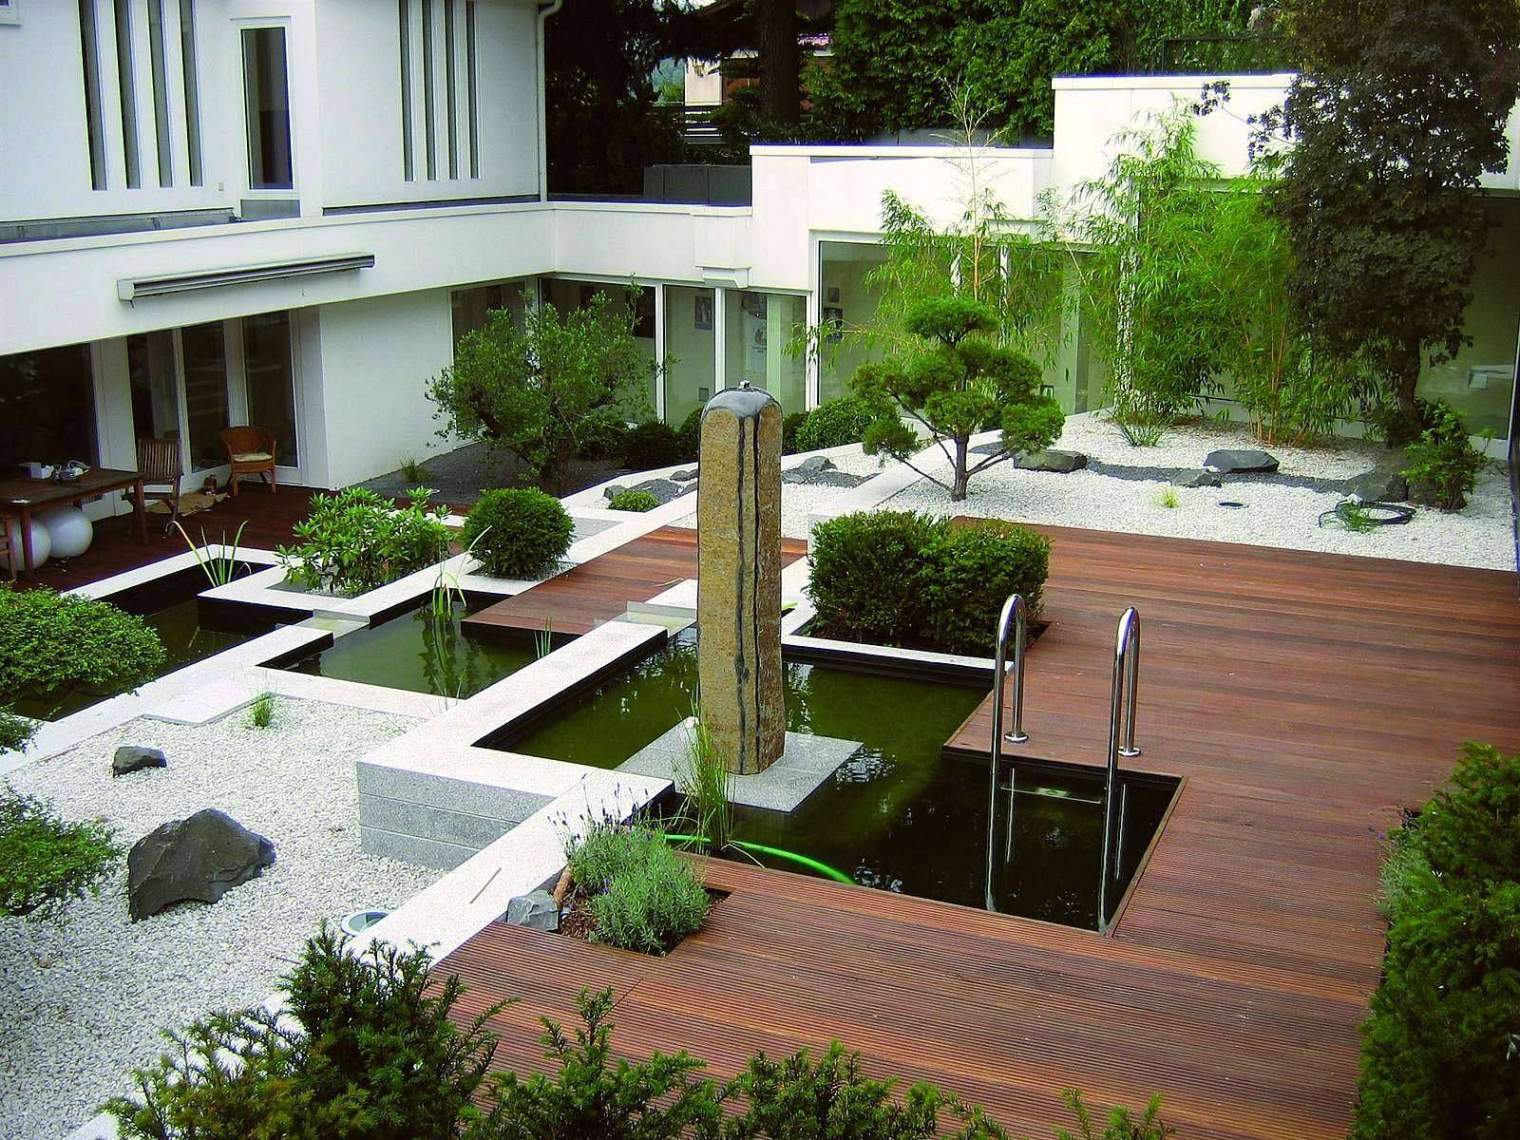 Gartenideen Kleine Gärten Gestalten Best Of 37 Das Beste Von Kleine Gärten Gestalten Beispiele Luxus